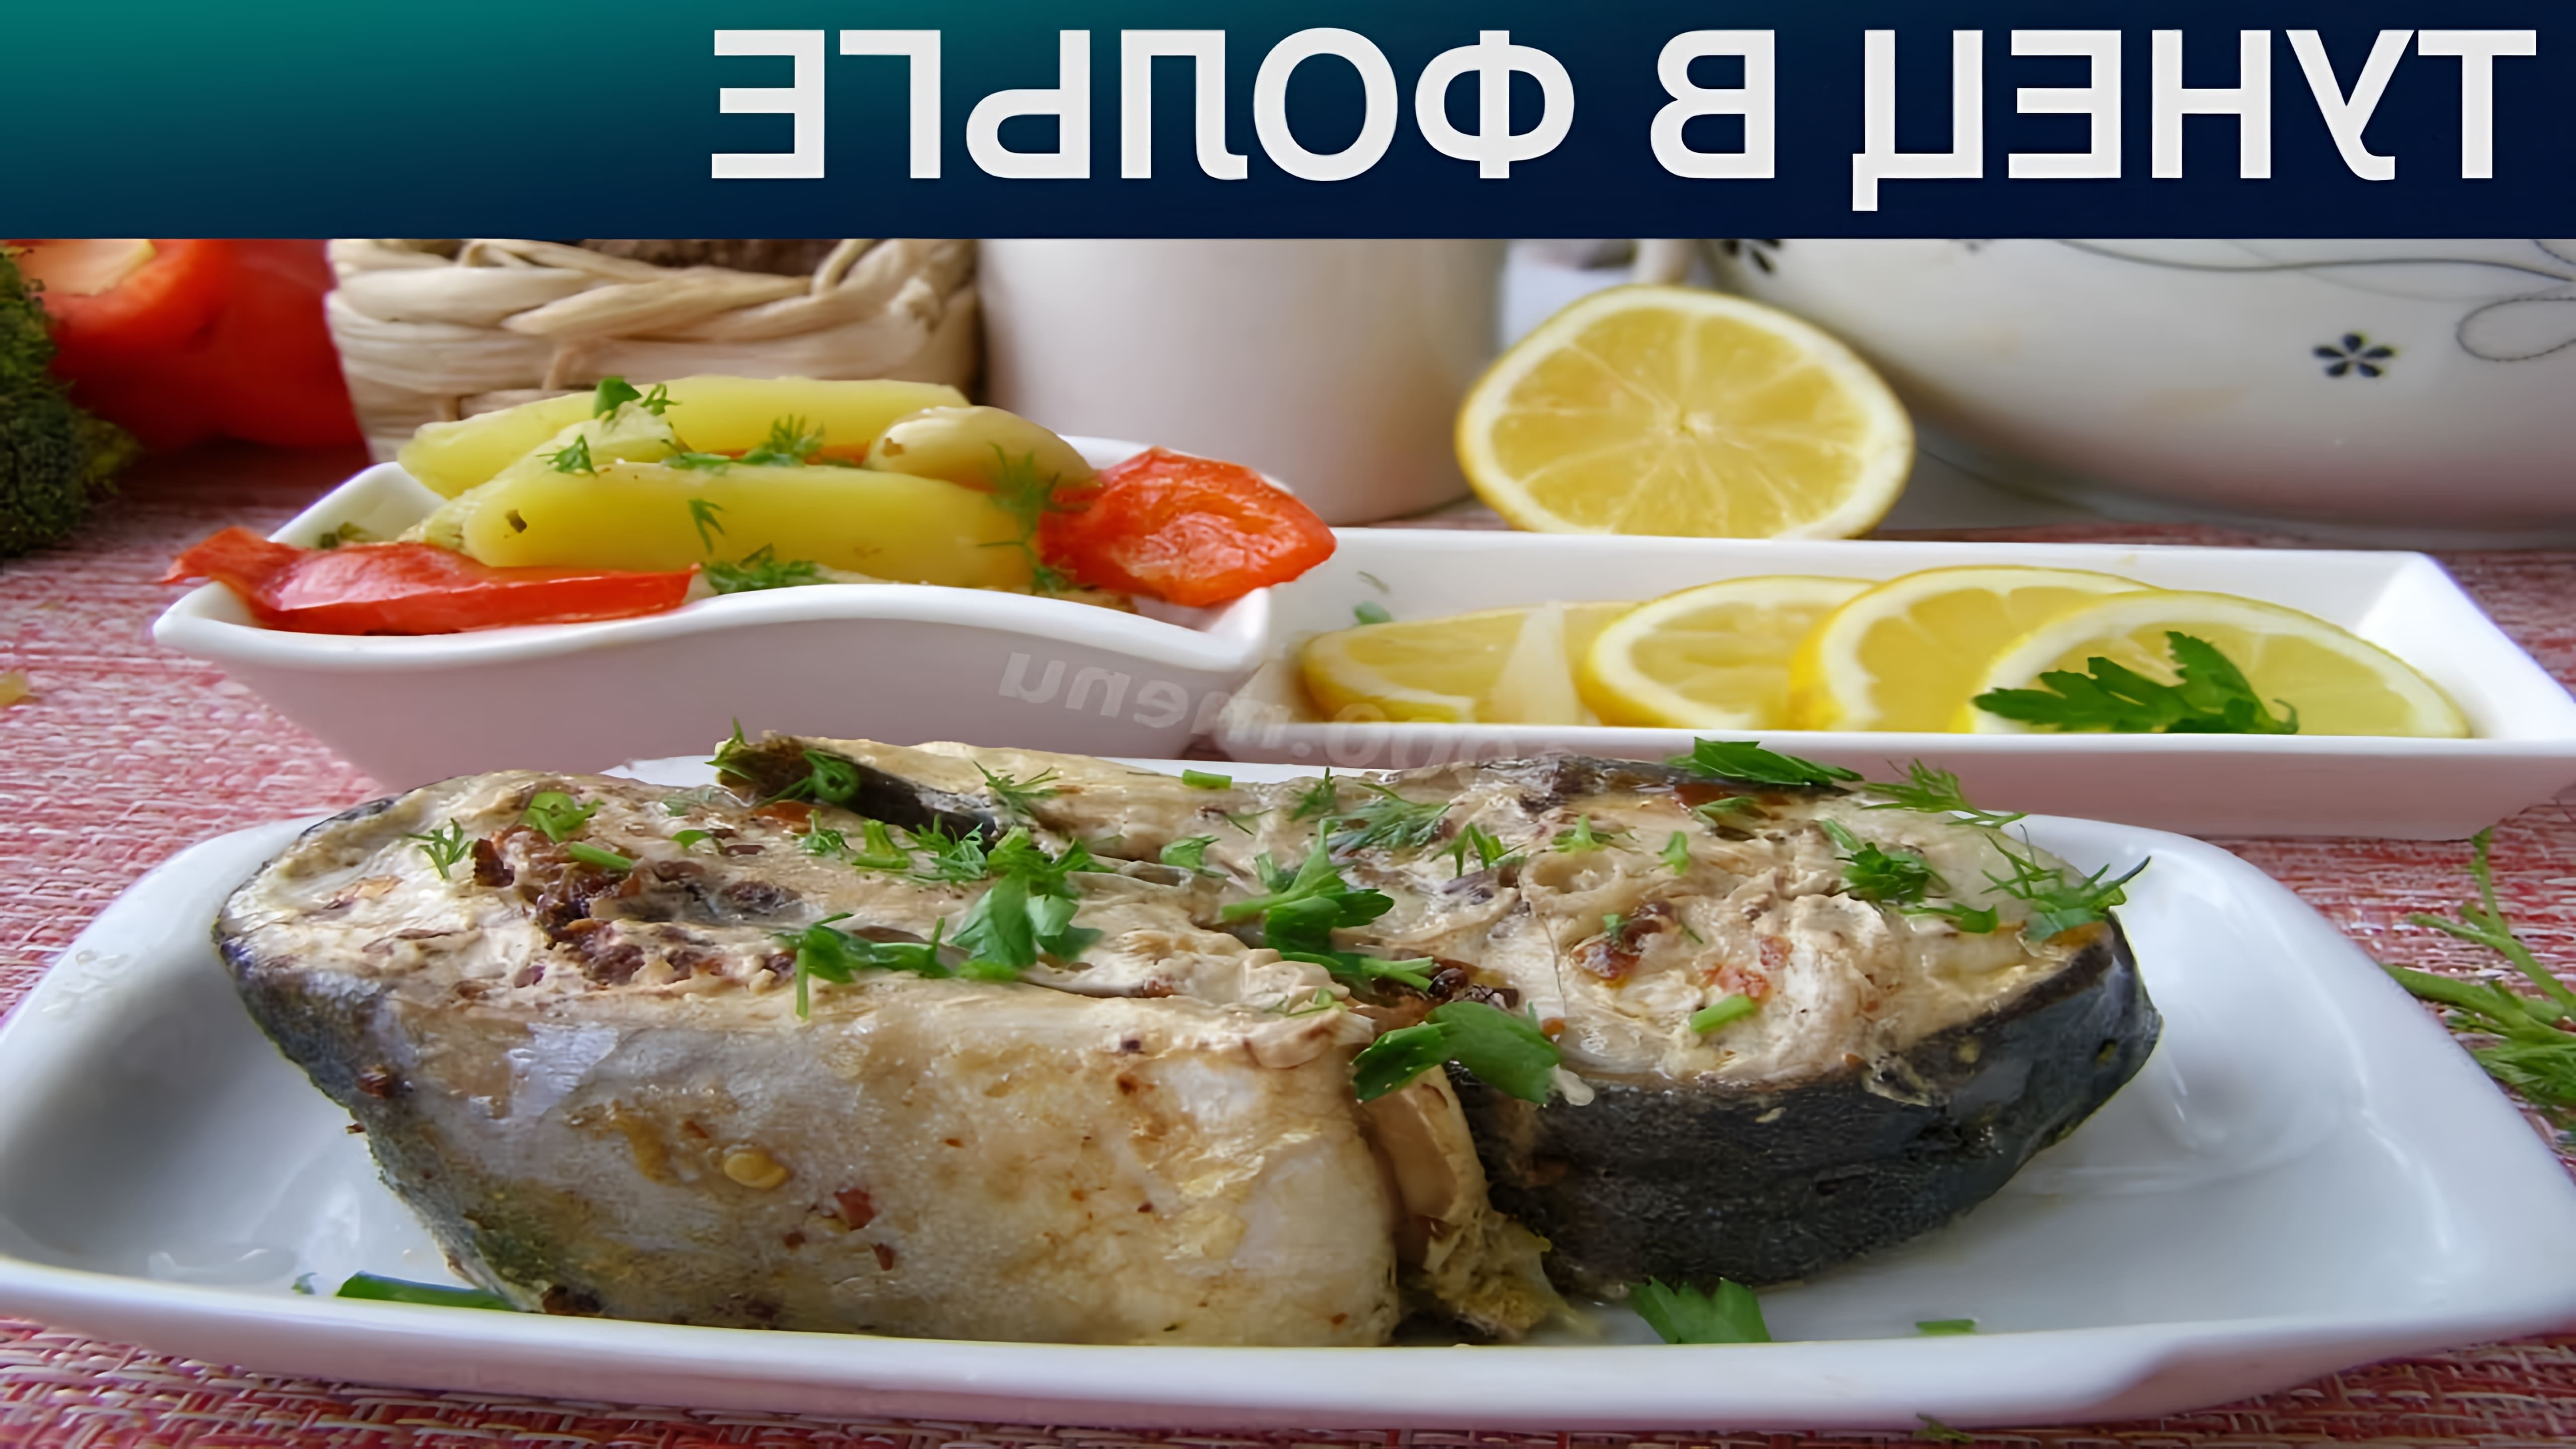 Тунец в фольге - полезная и вкусная сбалансированная еда. Вариант запекания тунца в фольге идеален для домашней... 